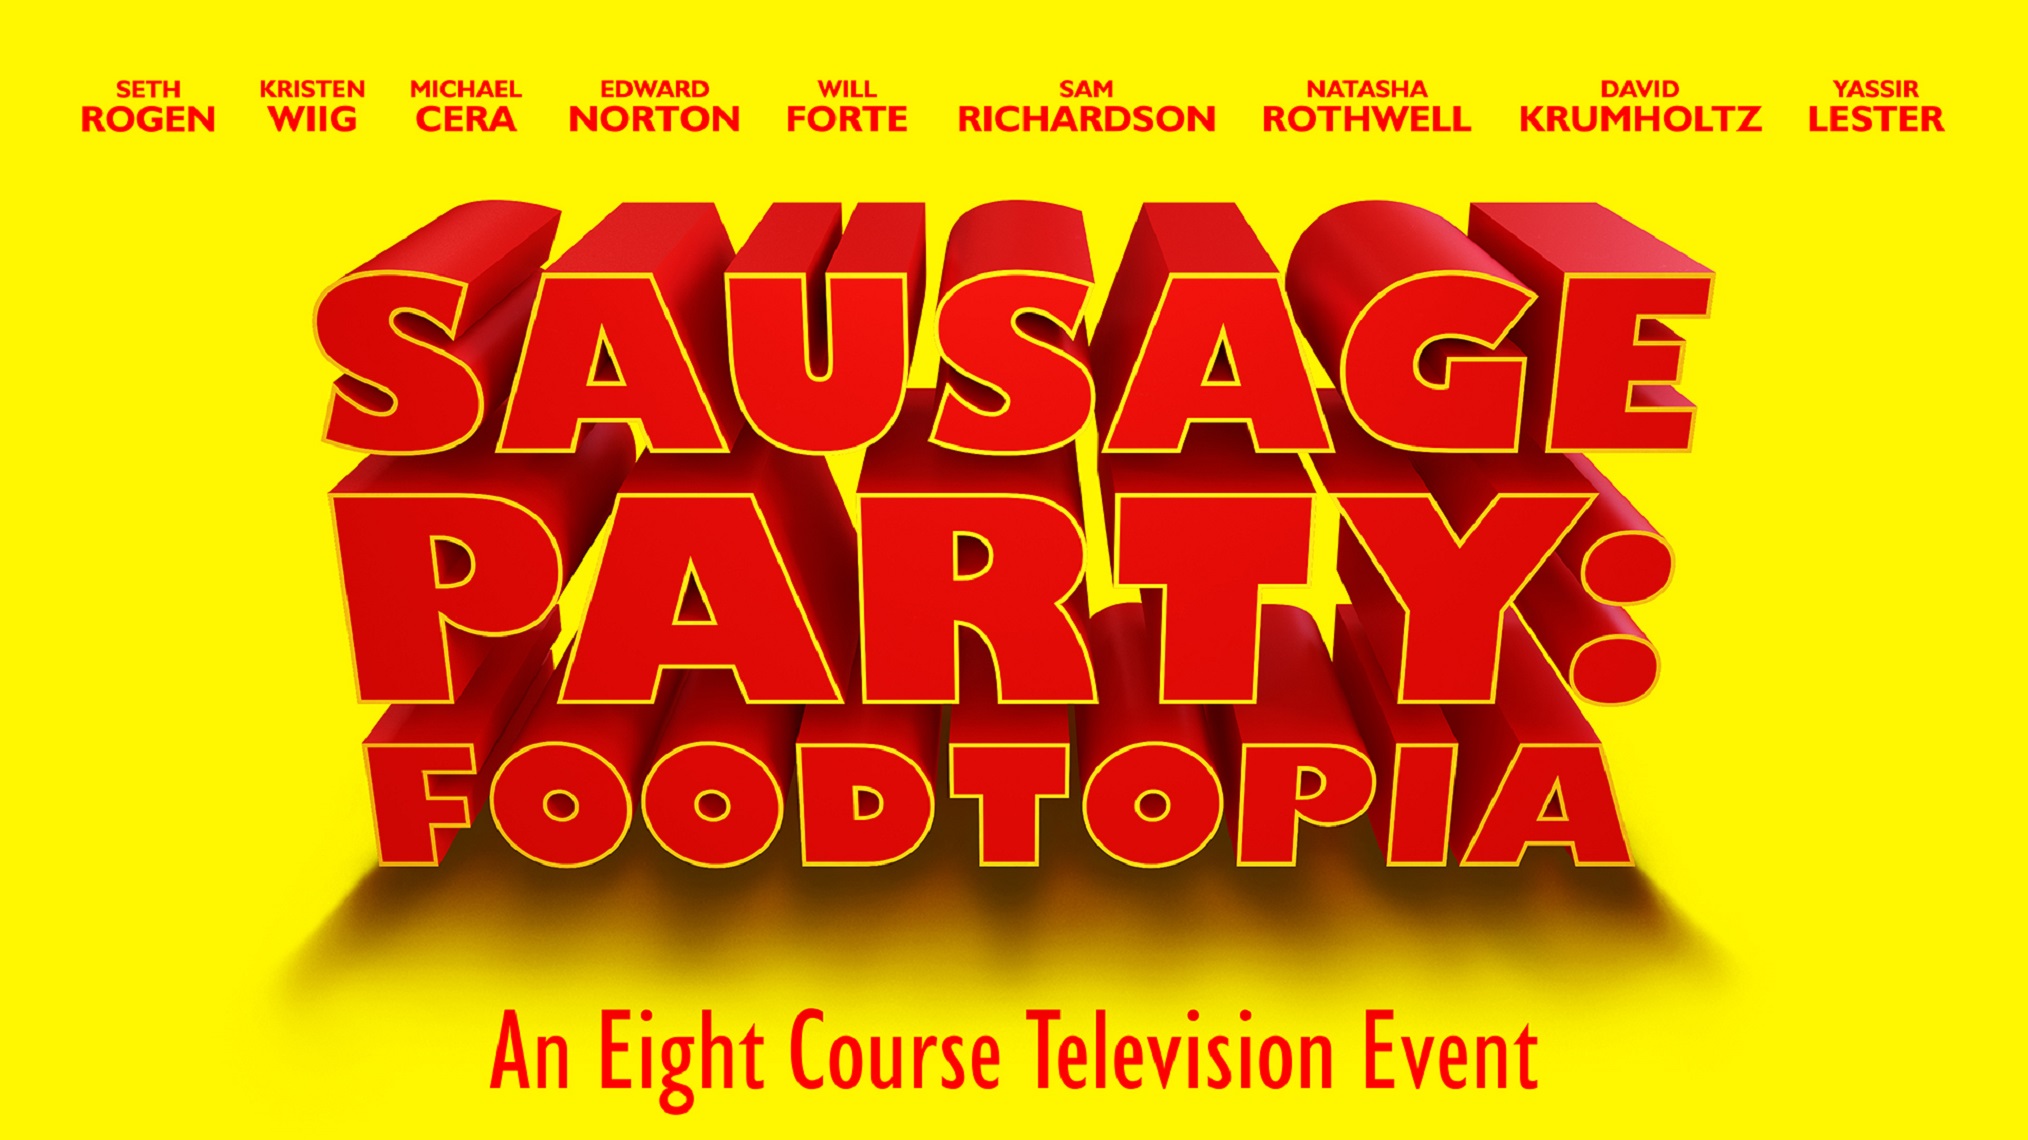 Sausage party 123 movies